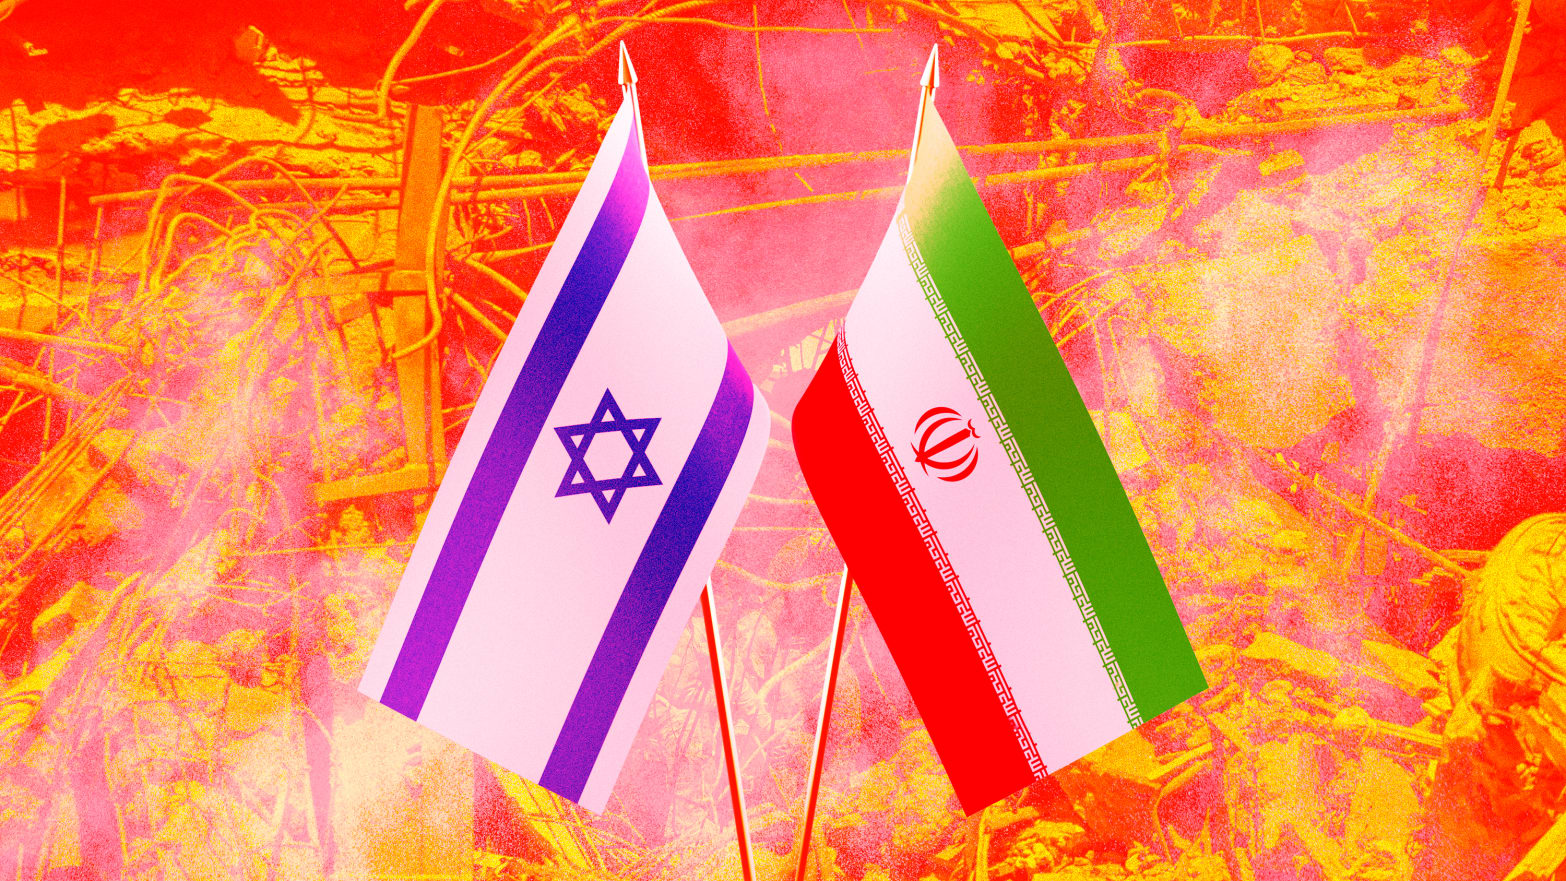  Μέση Ανατολή: Και τώρα τι; Για πρώτη φορά στο «φως» η Ιρανο - ισραηλινή σύγκρουση.